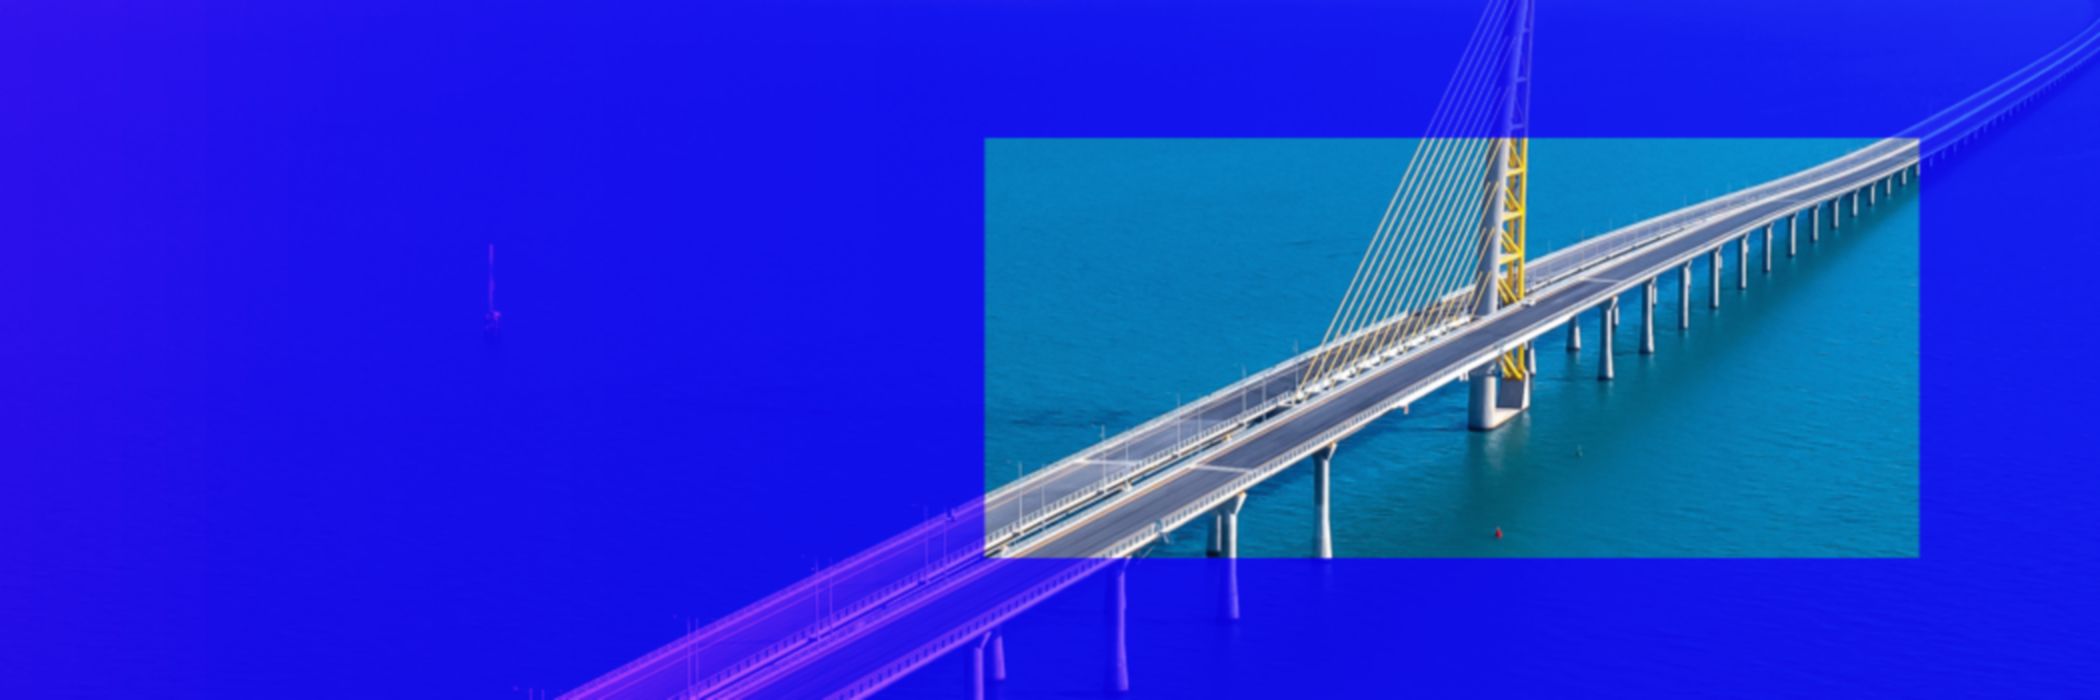 Kuwait bridge